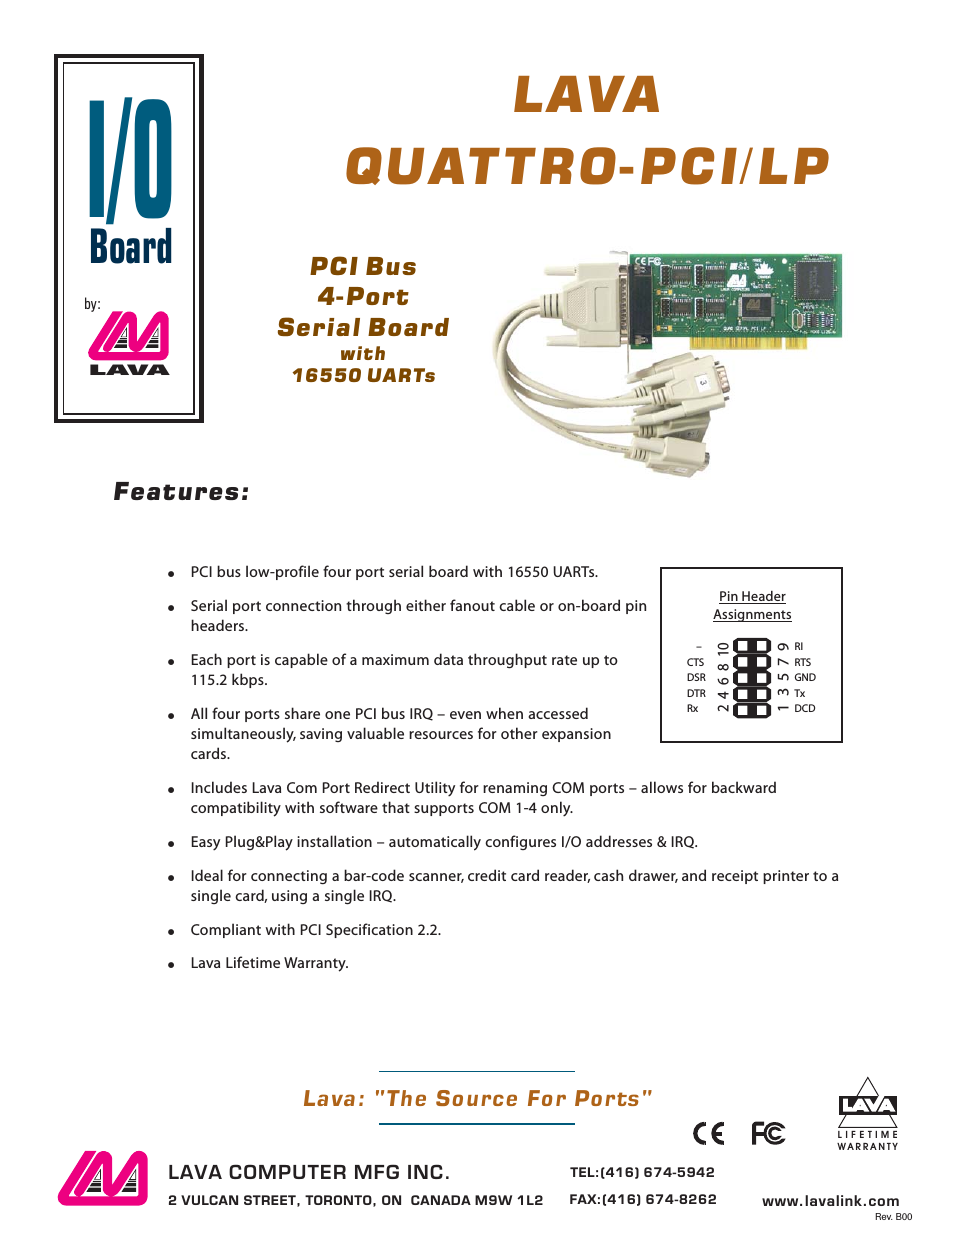 Quattro-PCI/LP